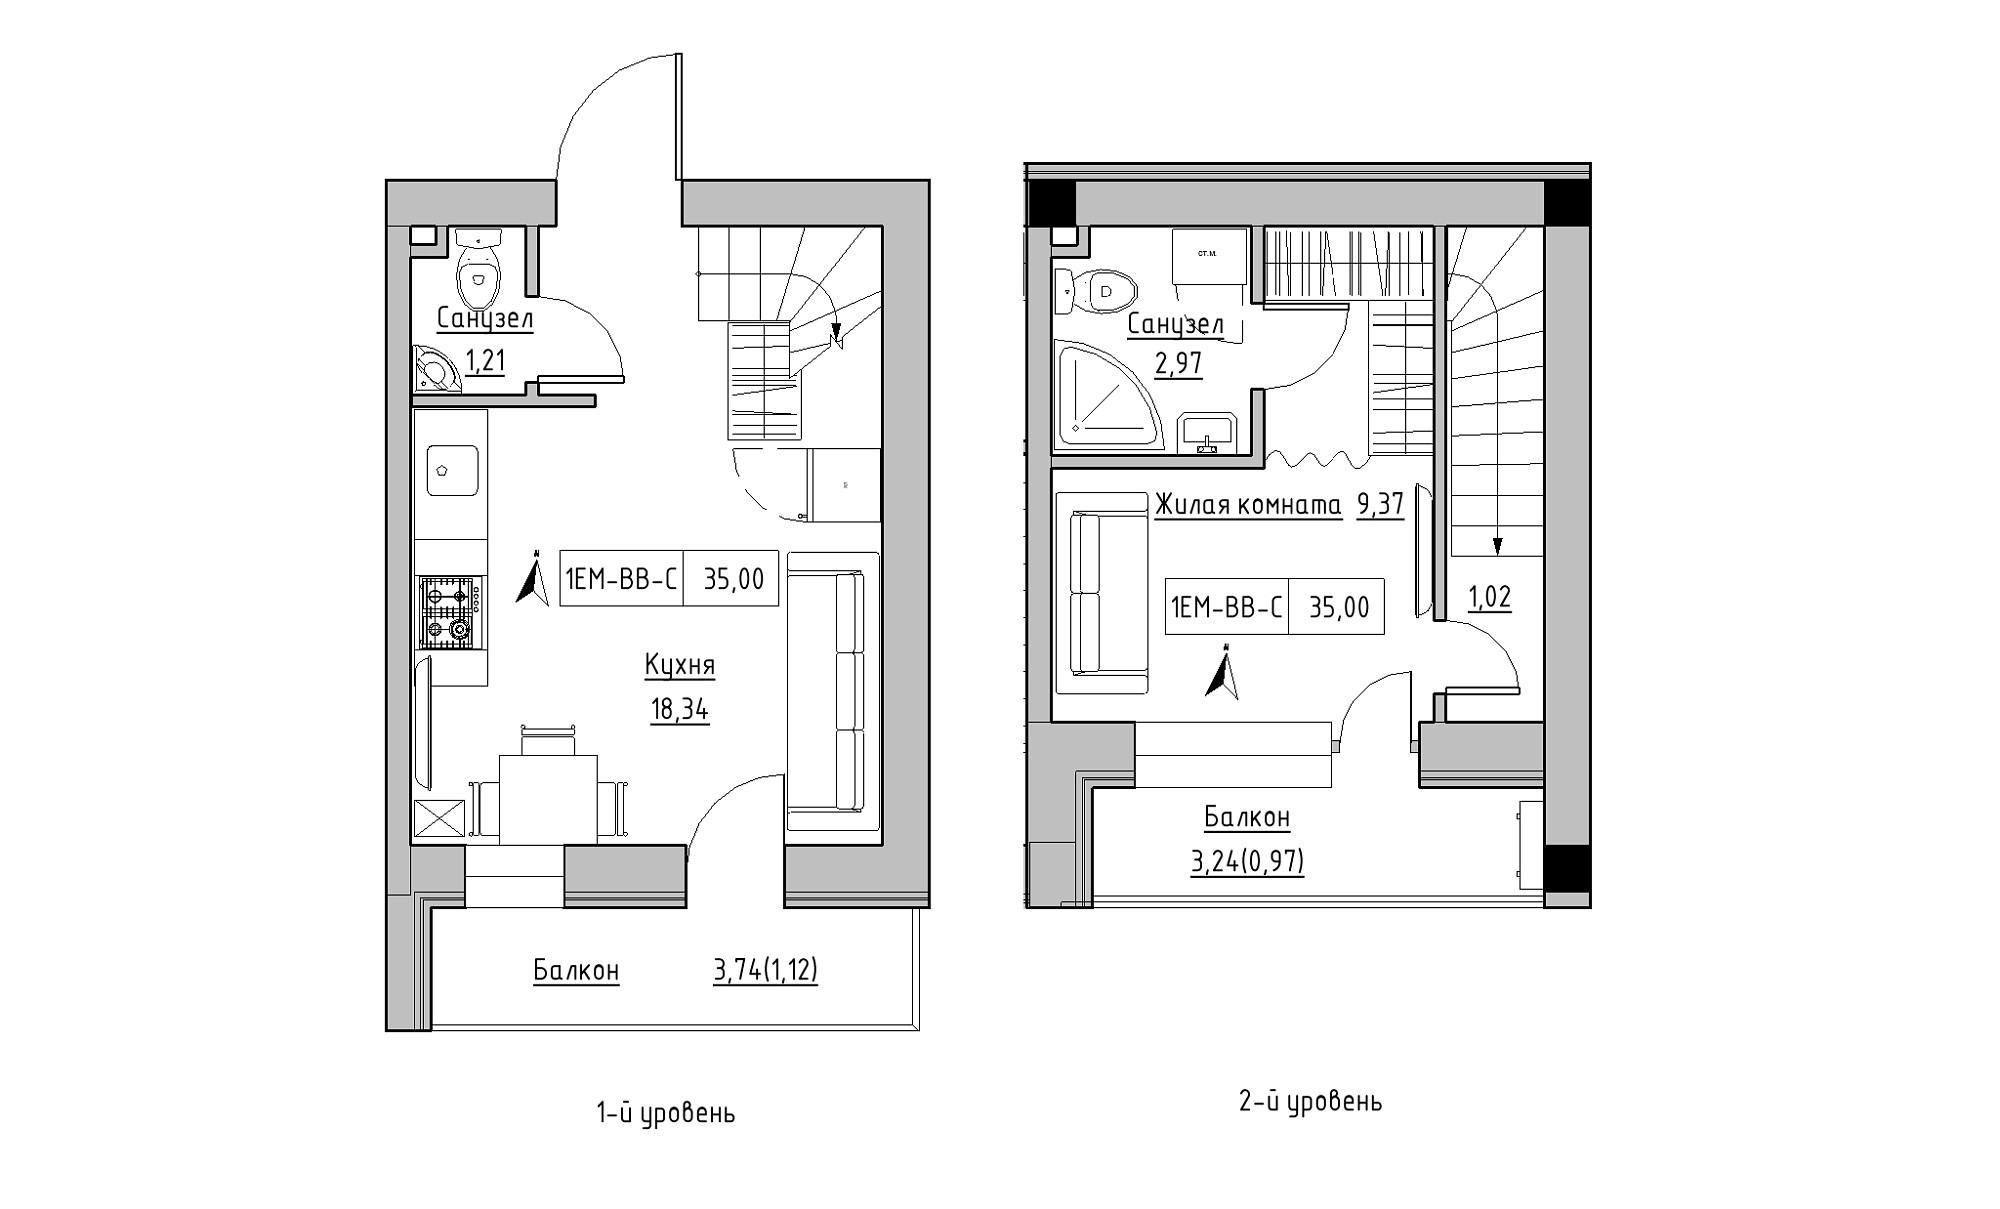 Planning 2-lvl flats area 35m2, KS-016-05/0005.